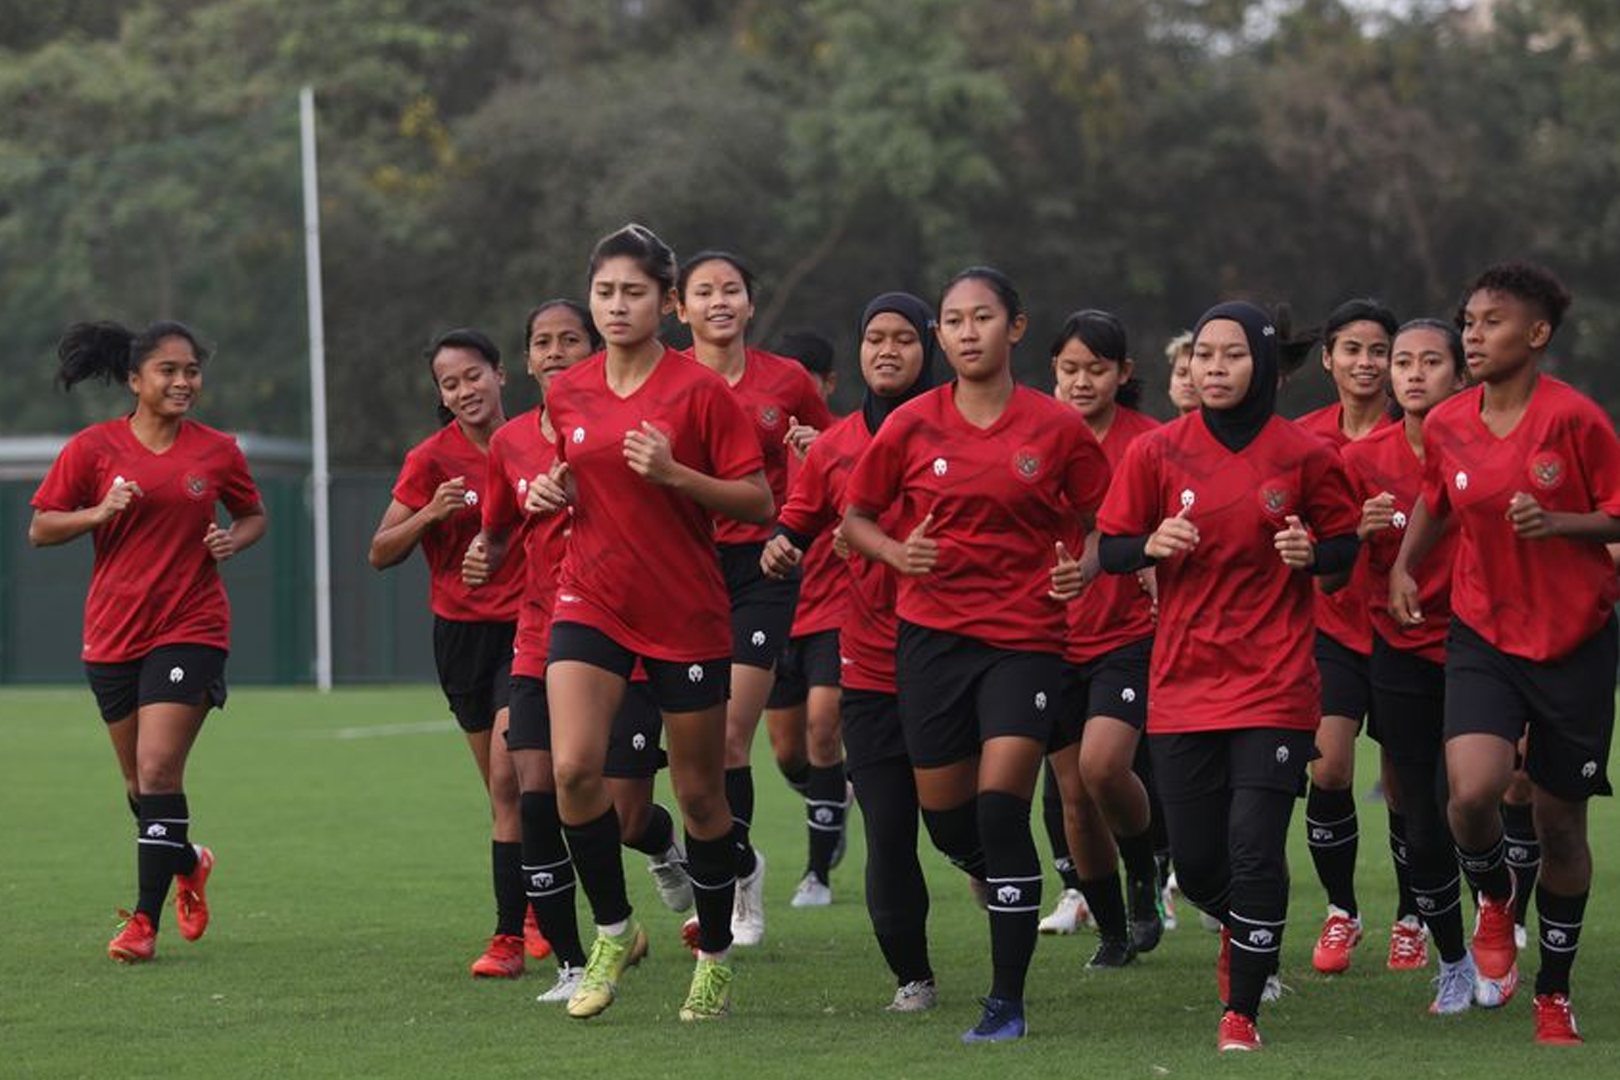 Piala AFF Putri U19 Indonesia vs Timor Leste Malam ini - iMSPORT.TV